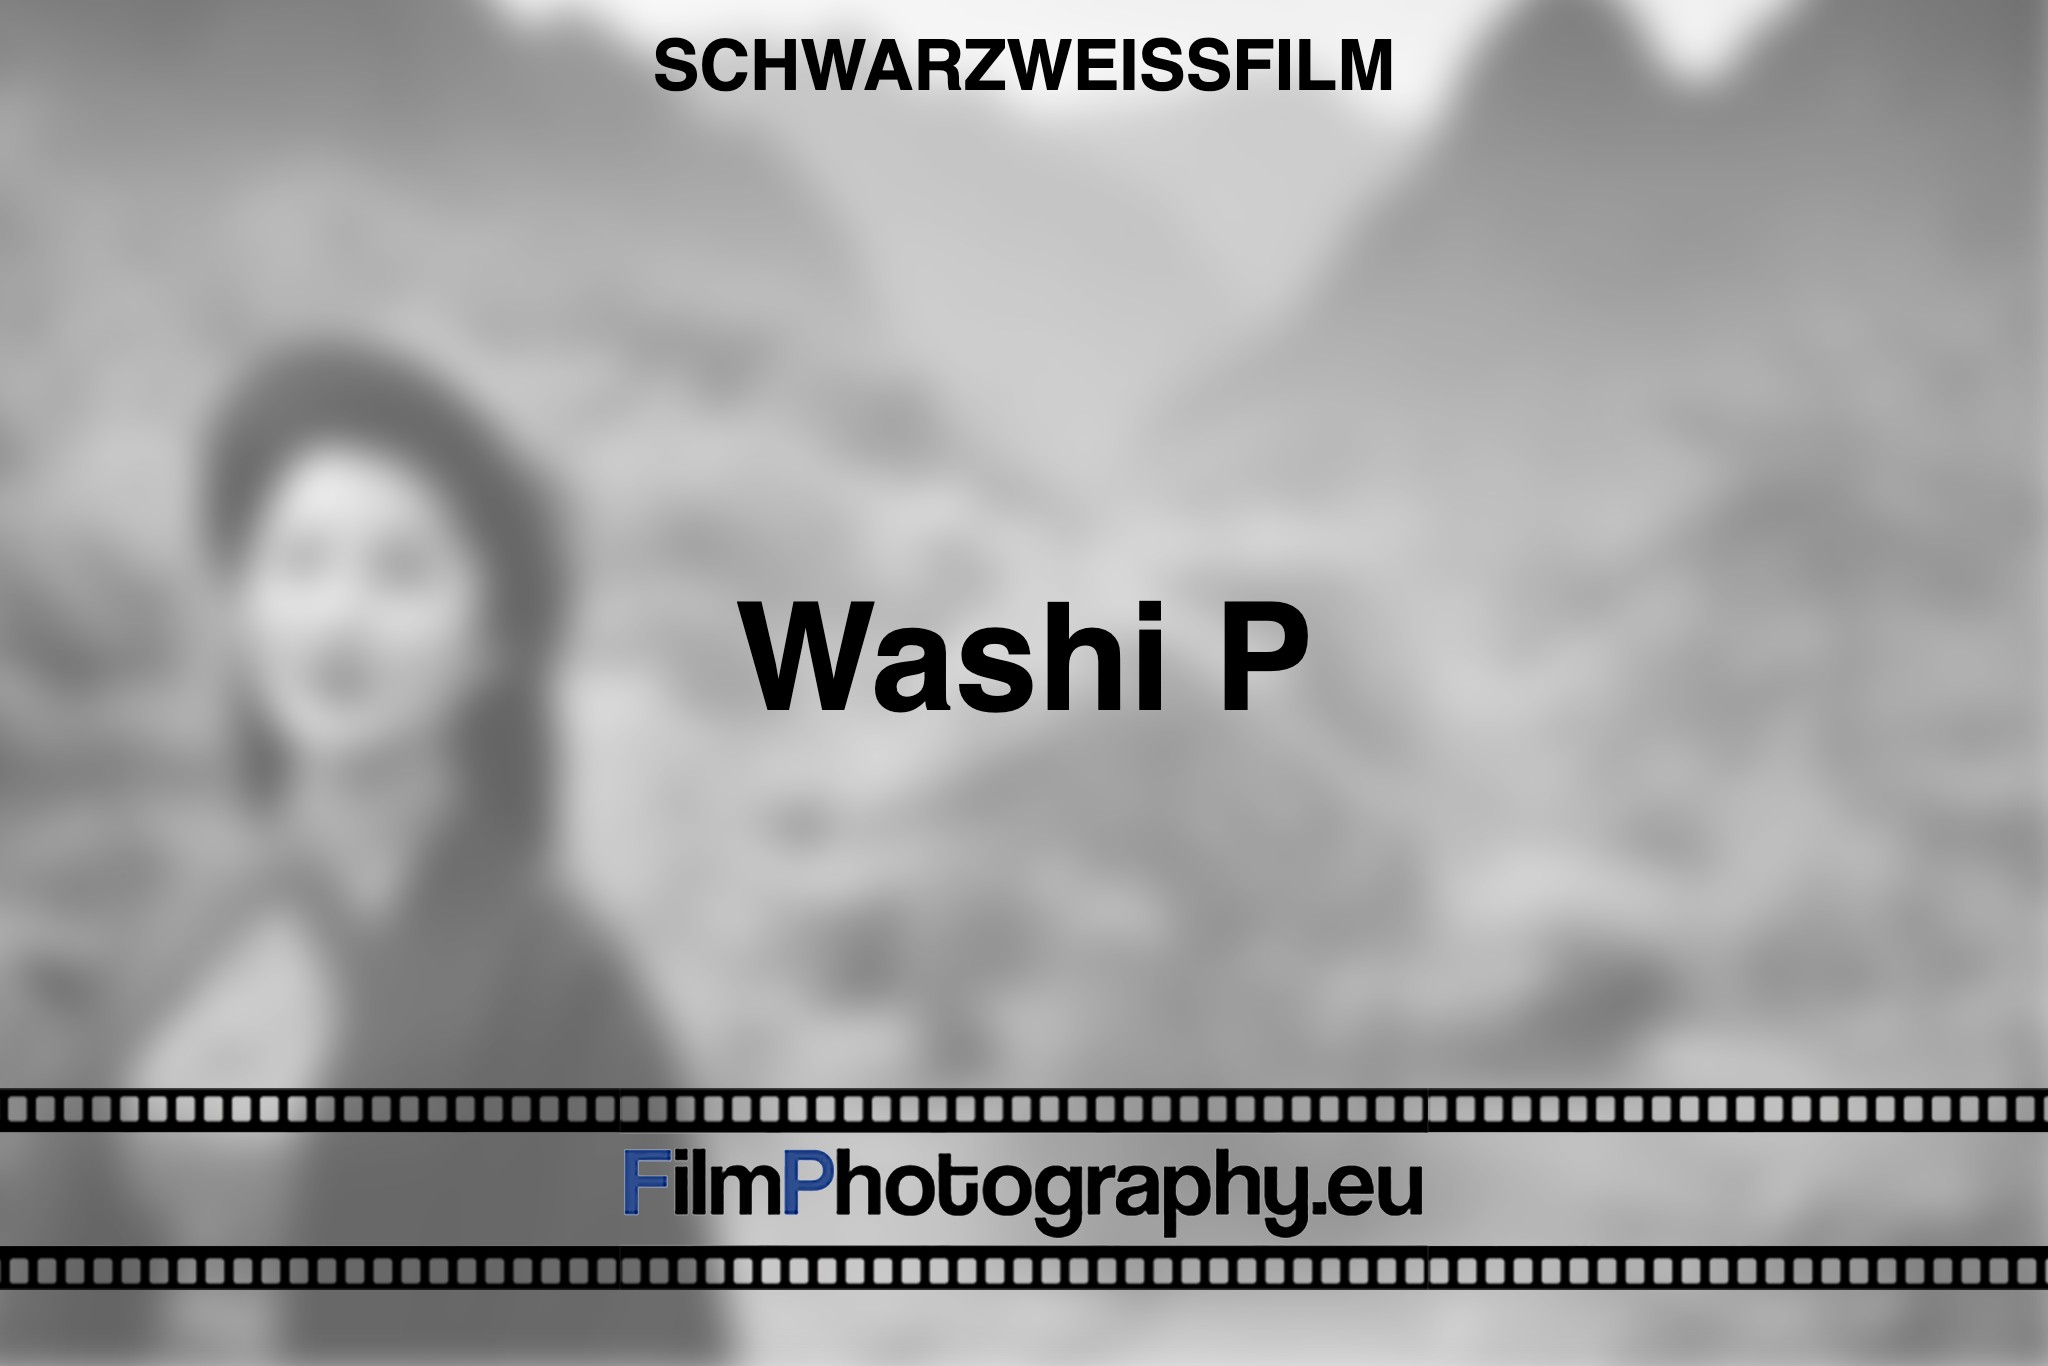 washi-p-schwarzweißfilm-bnv